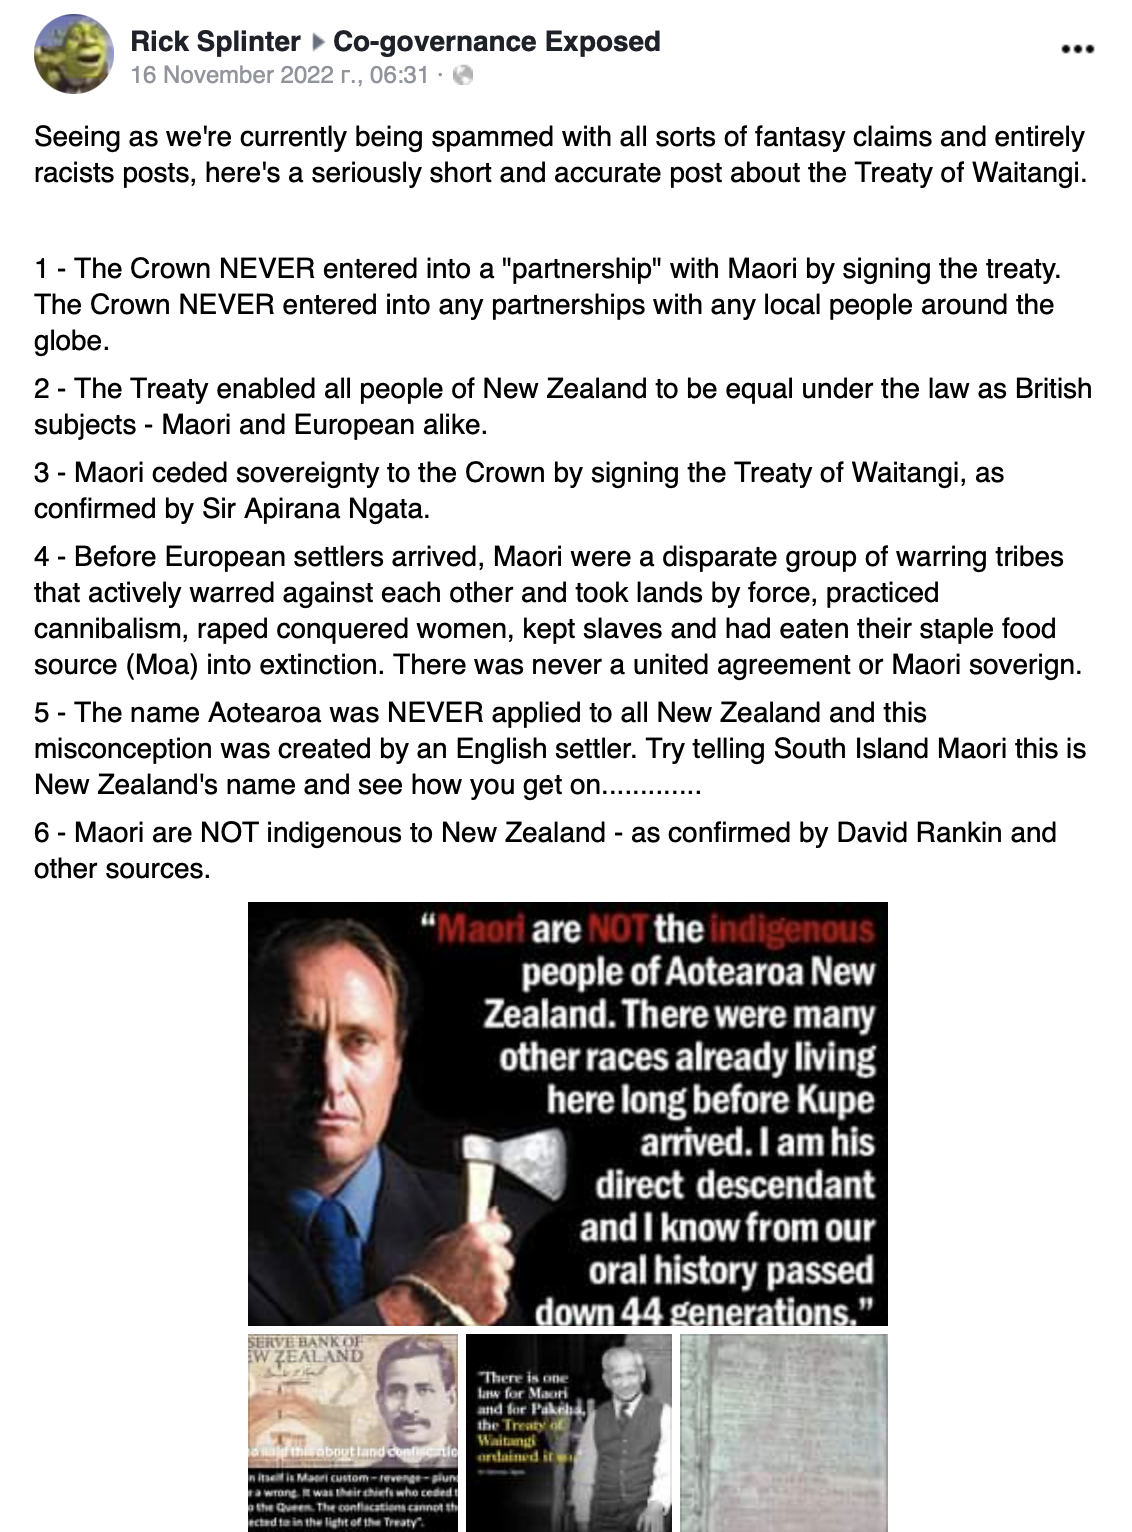 Маори не были коренными жителями Новой Зеландии